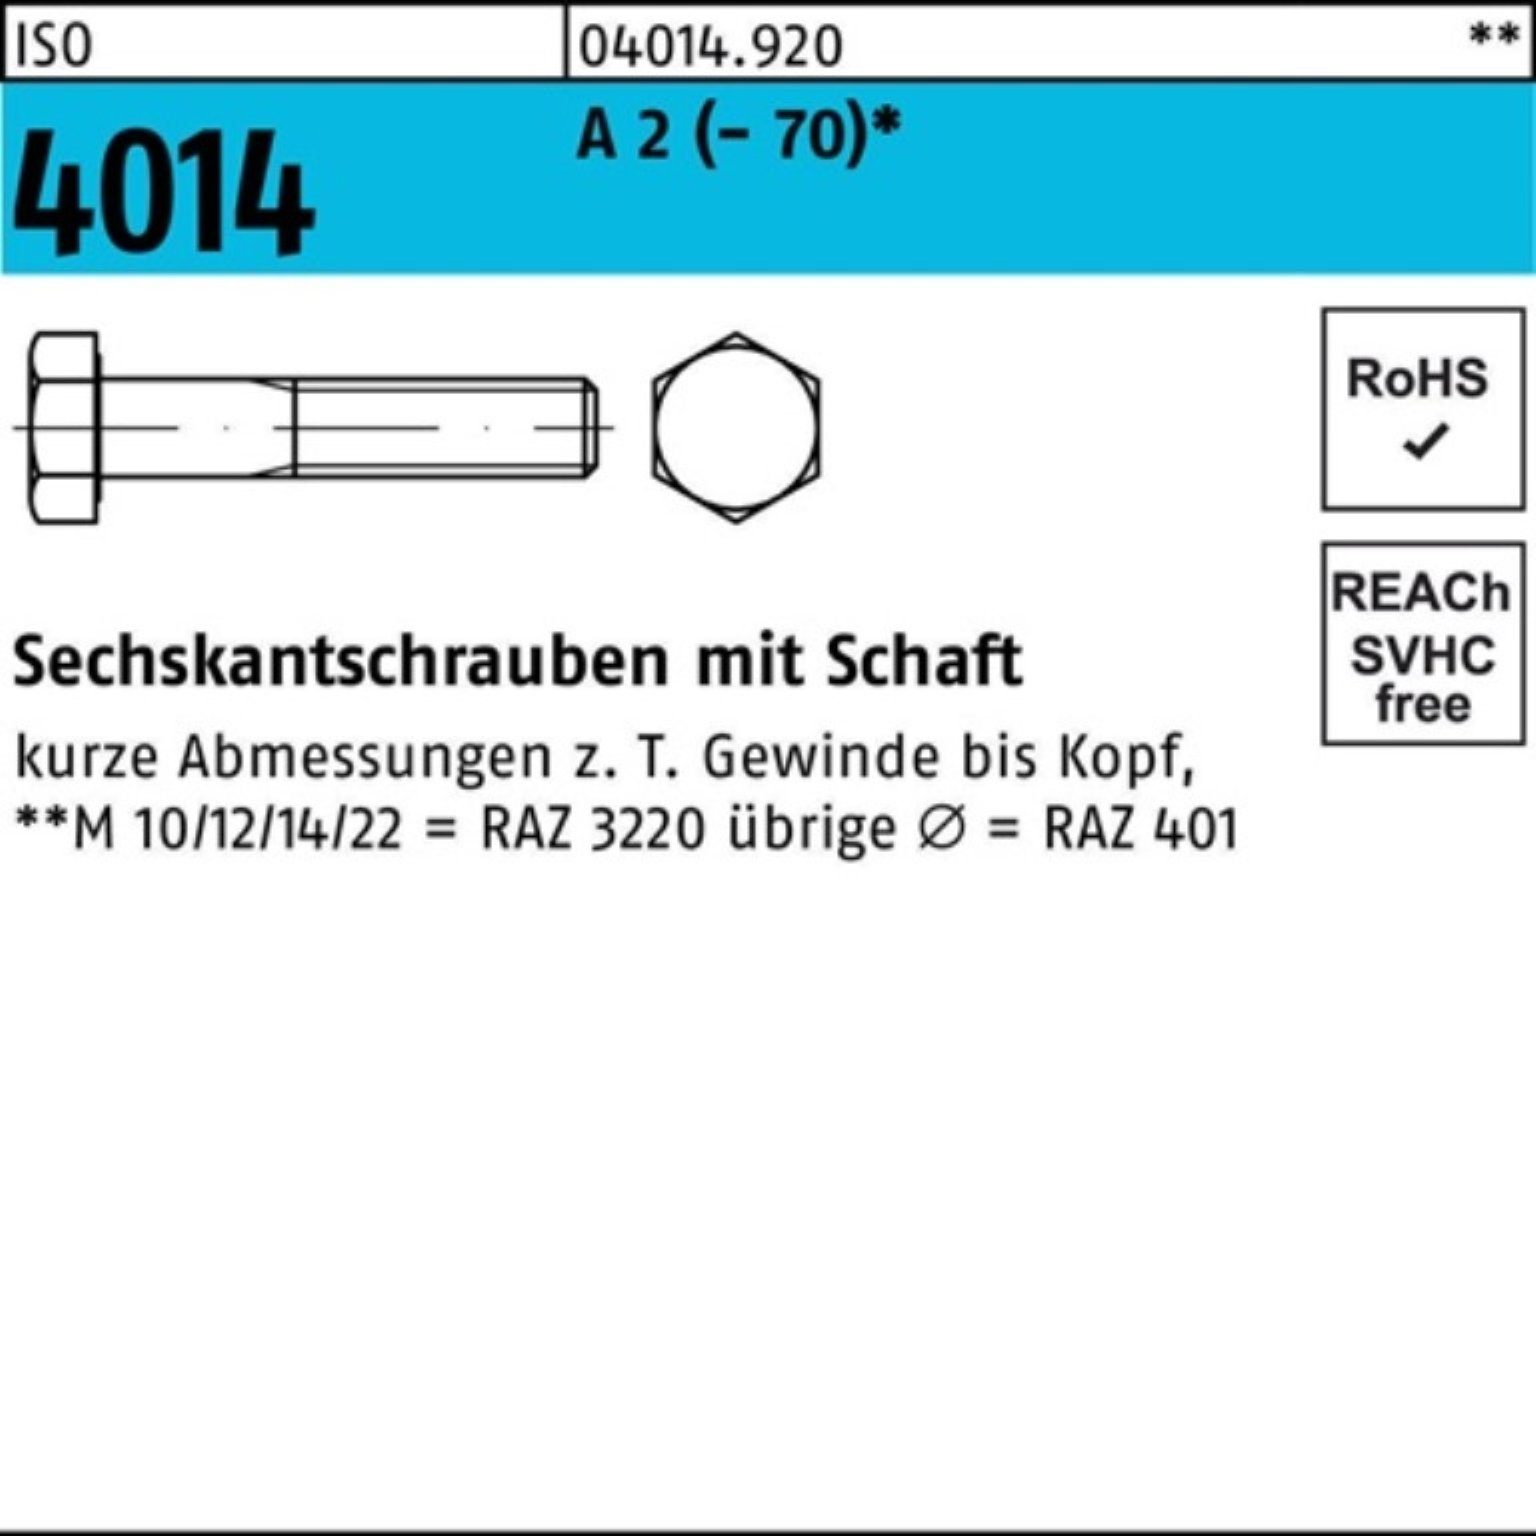 Pack 160 2 A St (70) M24x Schaft Sechskantschraube Bufab Sechskantschraube 1 100er ISO 4014